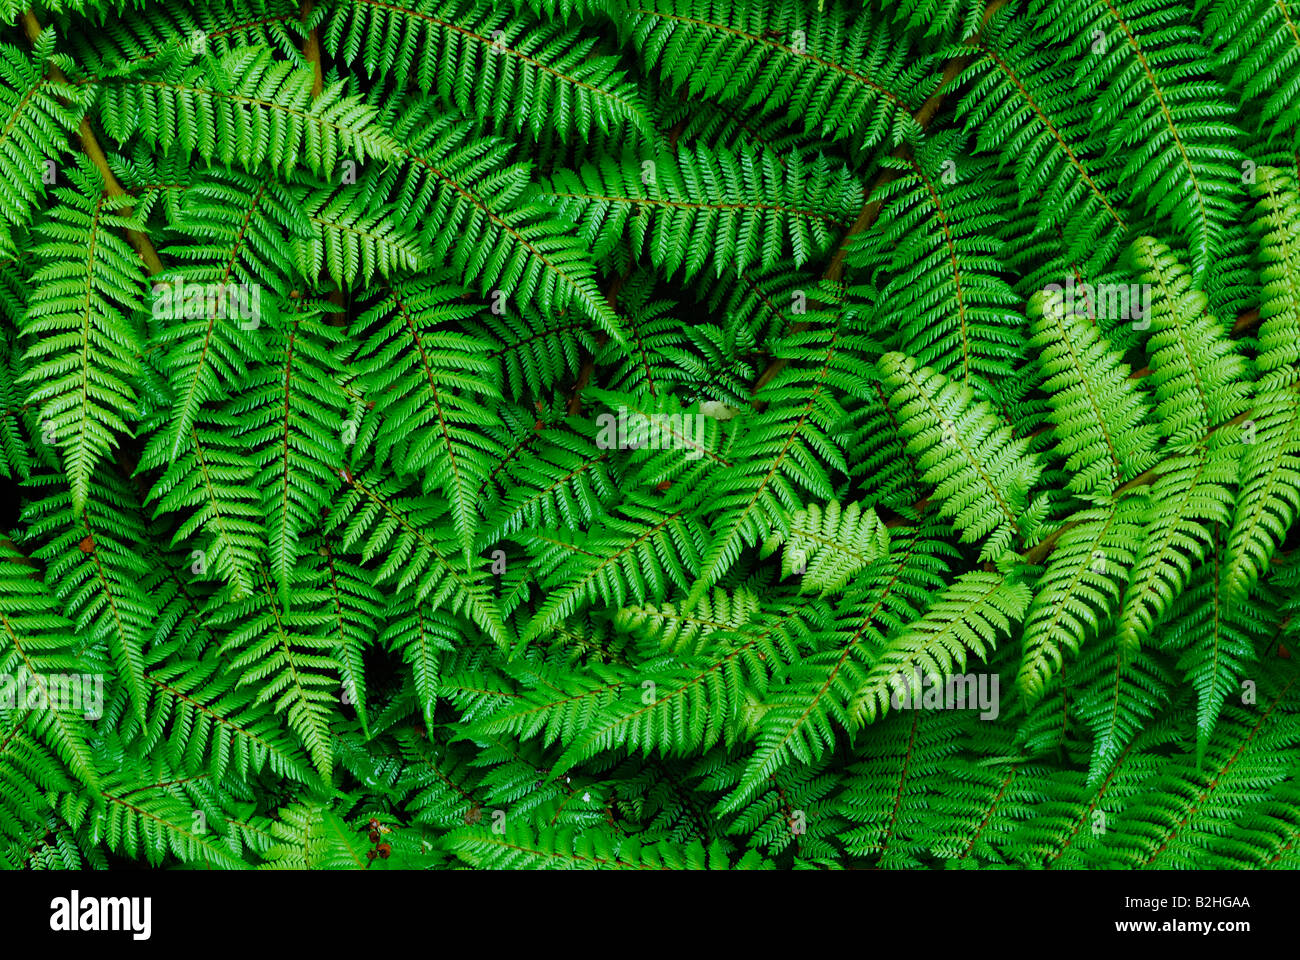 brake fern Pteridophyta South West New Zealand Fiordland National Park still stills background backgrounds patterns patterns Stock Photo